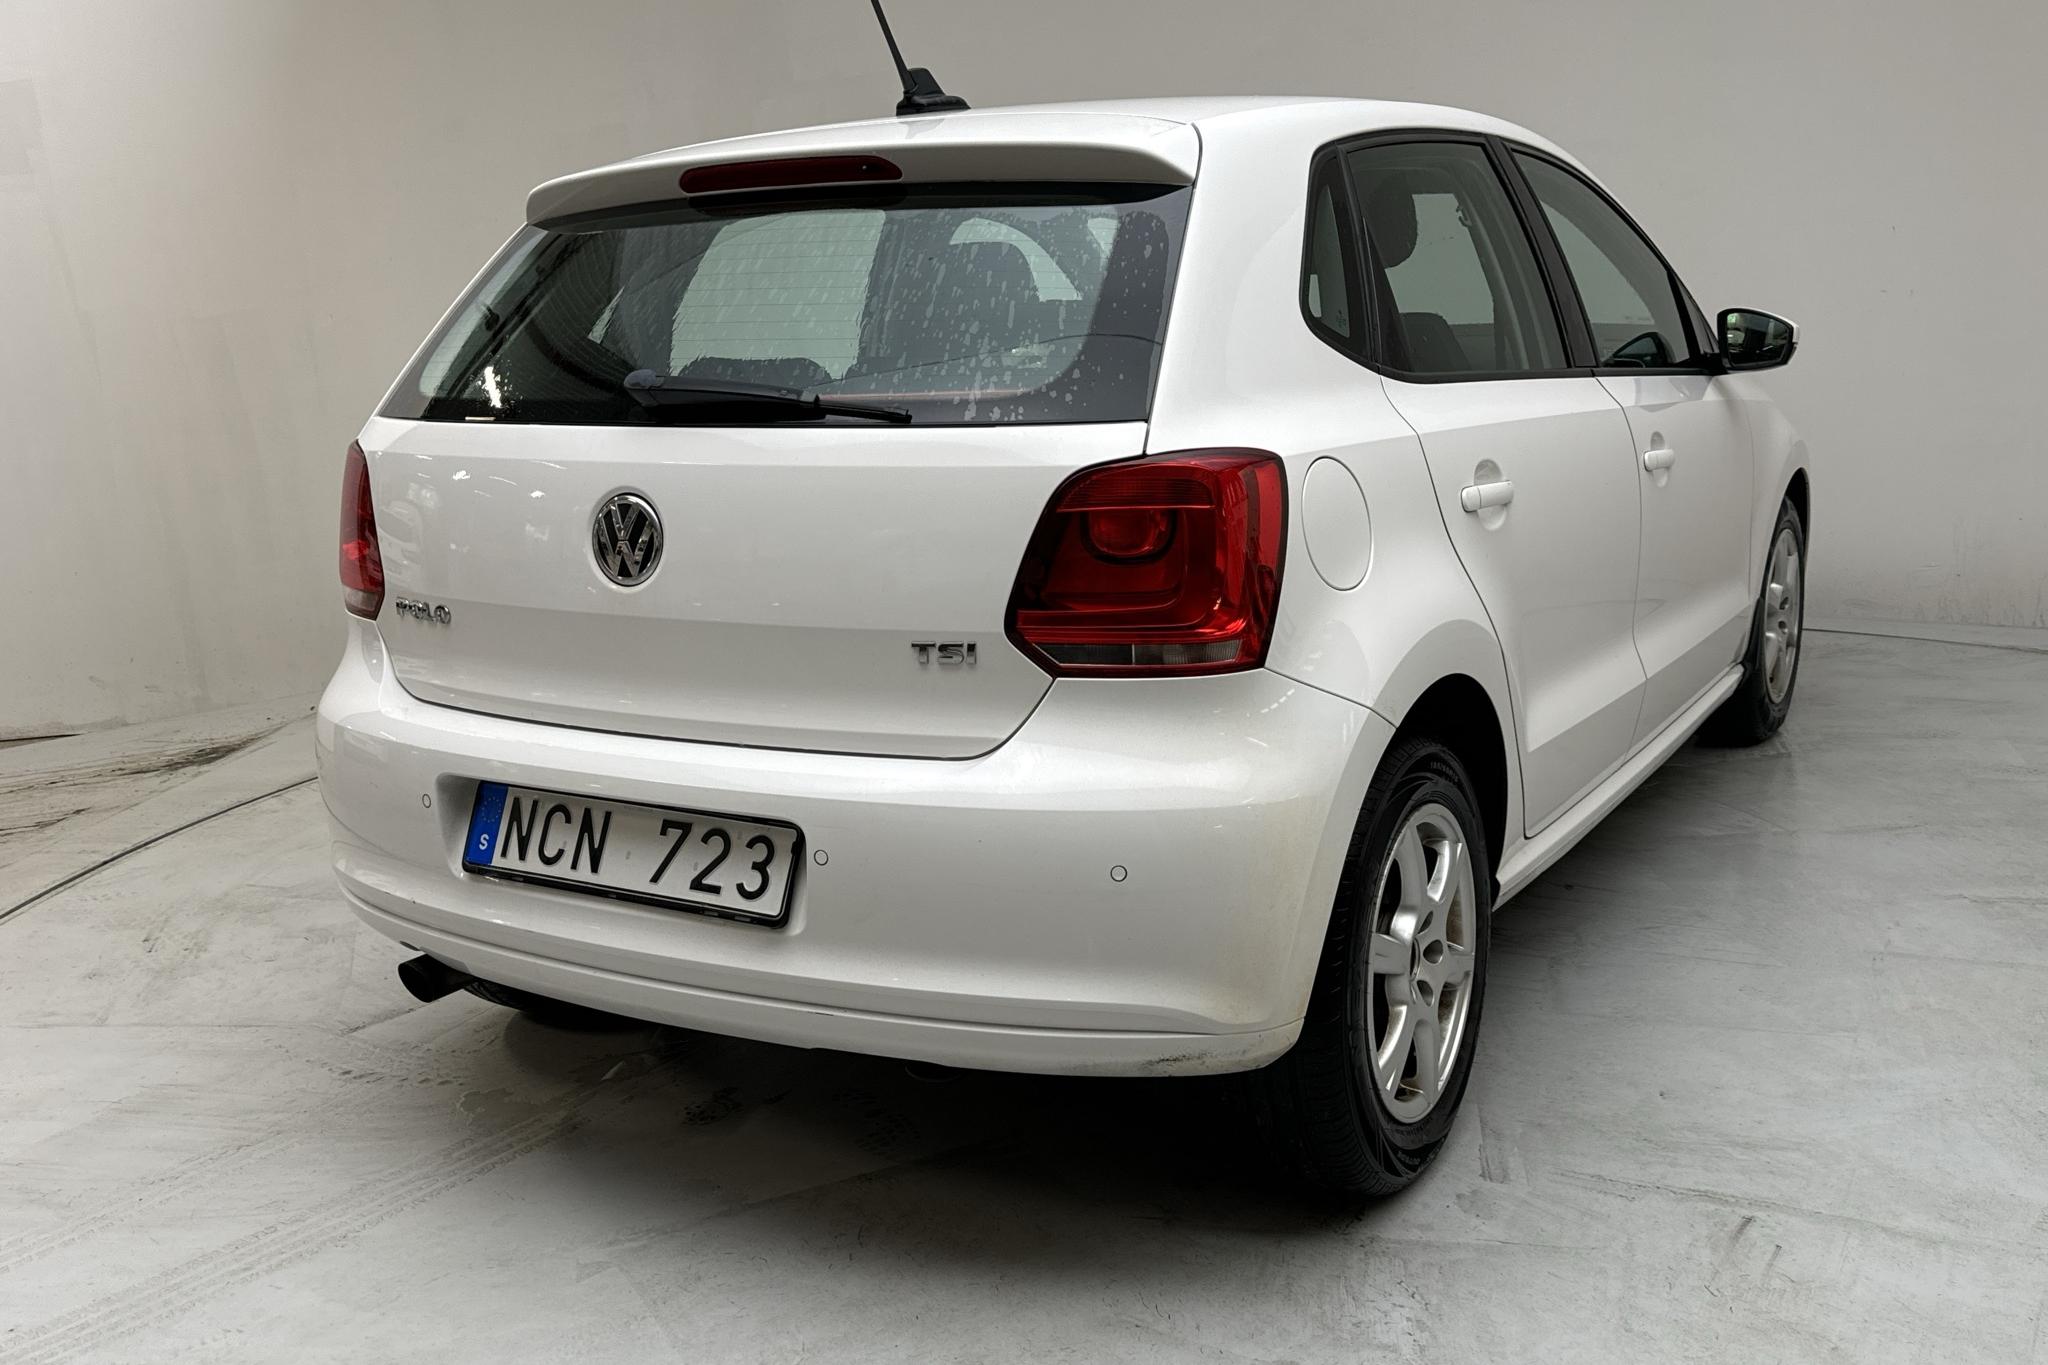 VW Polo 1.2 TSI 5dr (90hk) - 142 270 km - Manualna - biały - 2013